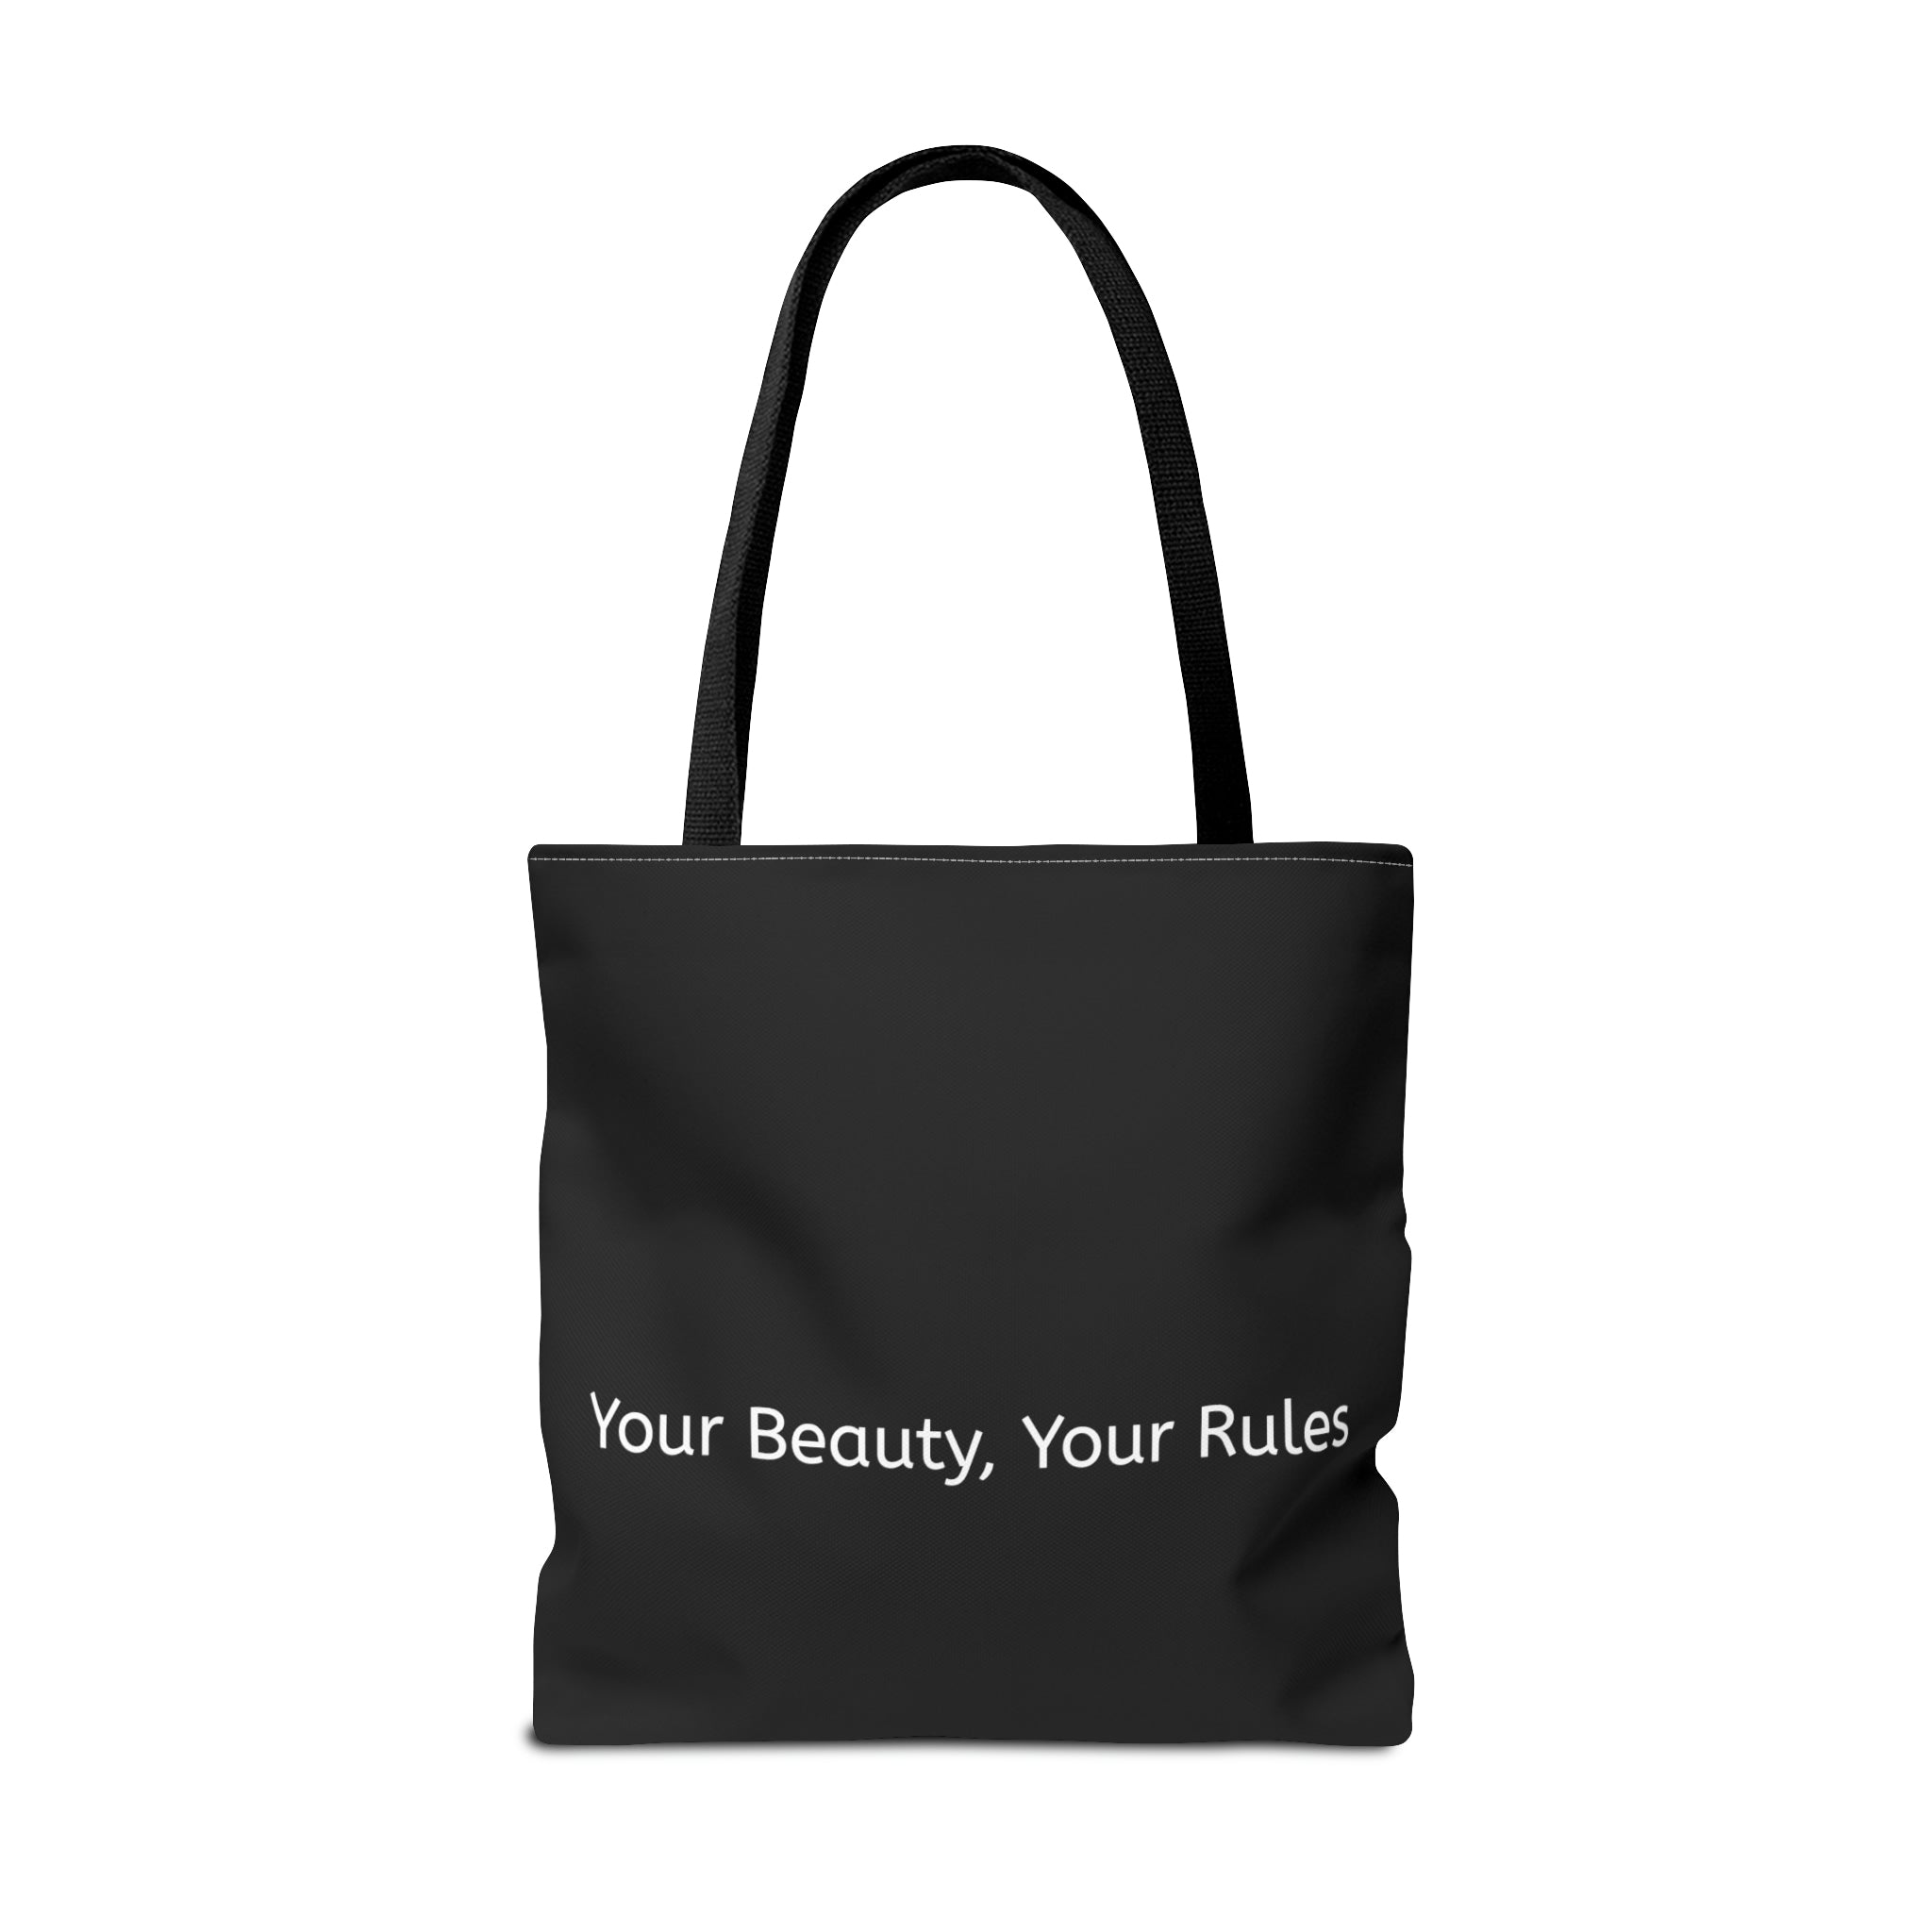 Naturalique Beauty Tote Bag - Black